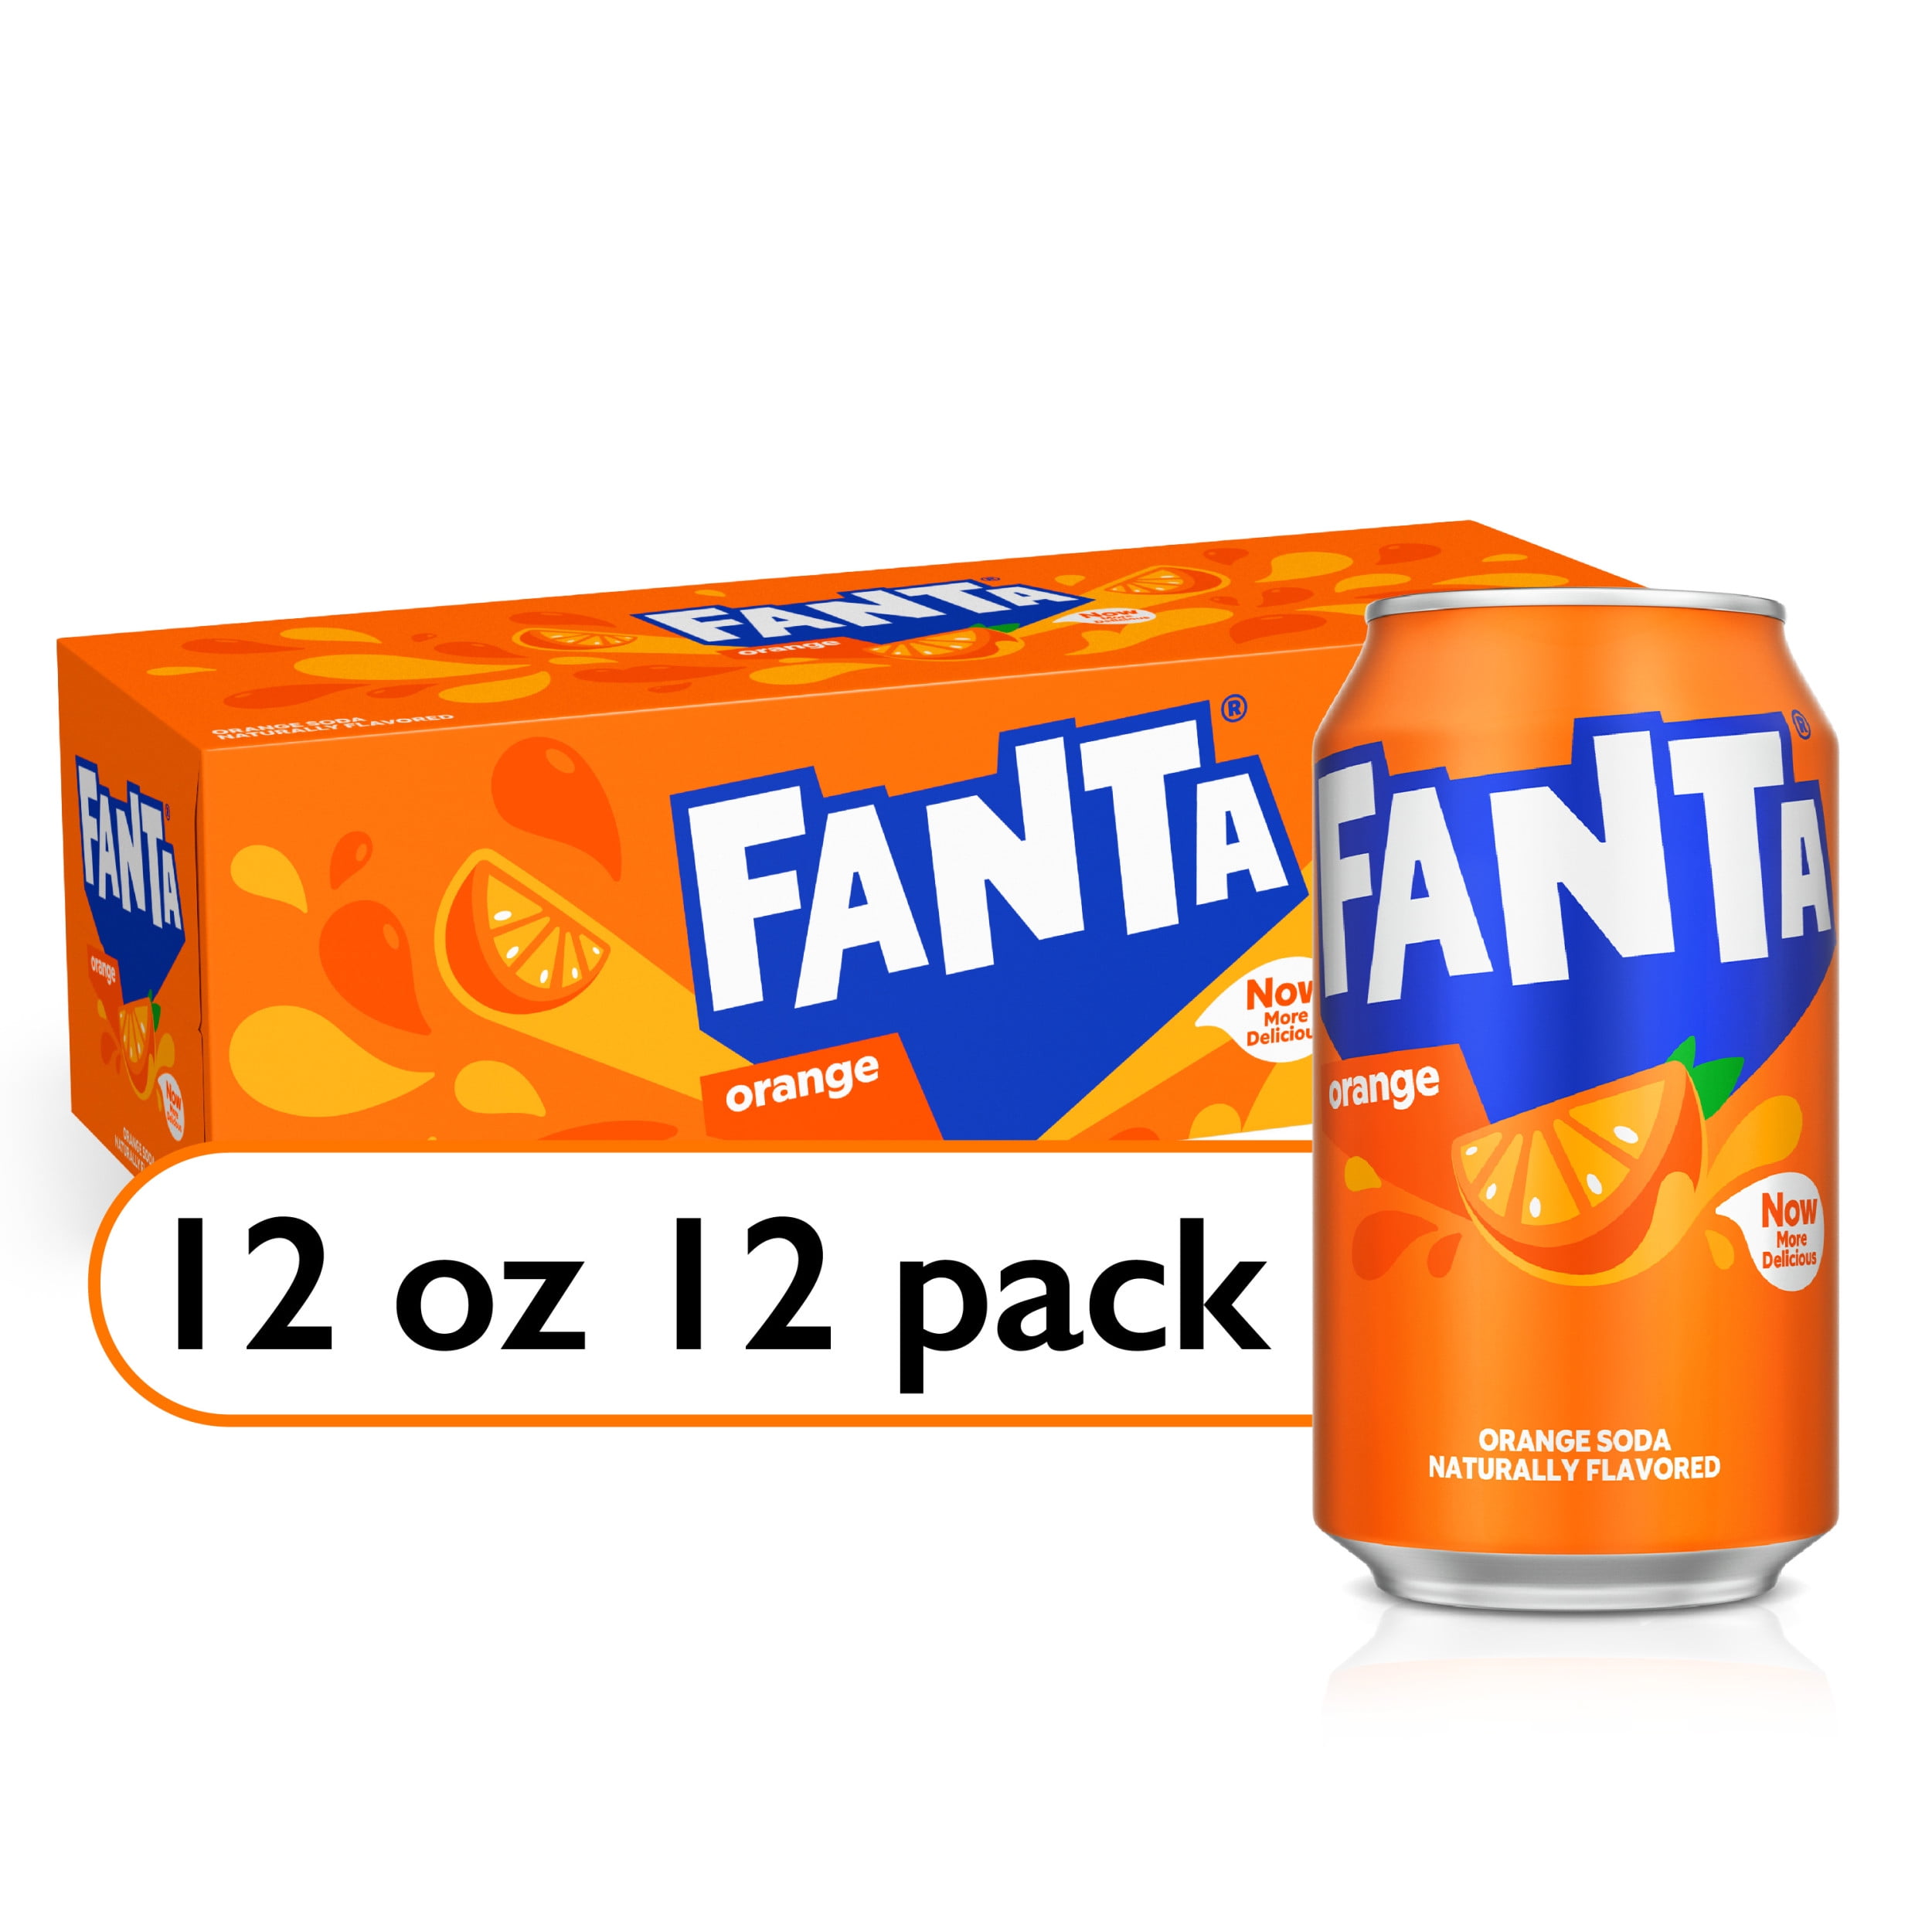 Fanta Orange Fruit Soda Pop, 12 fl oz, 12 Pack Cans 